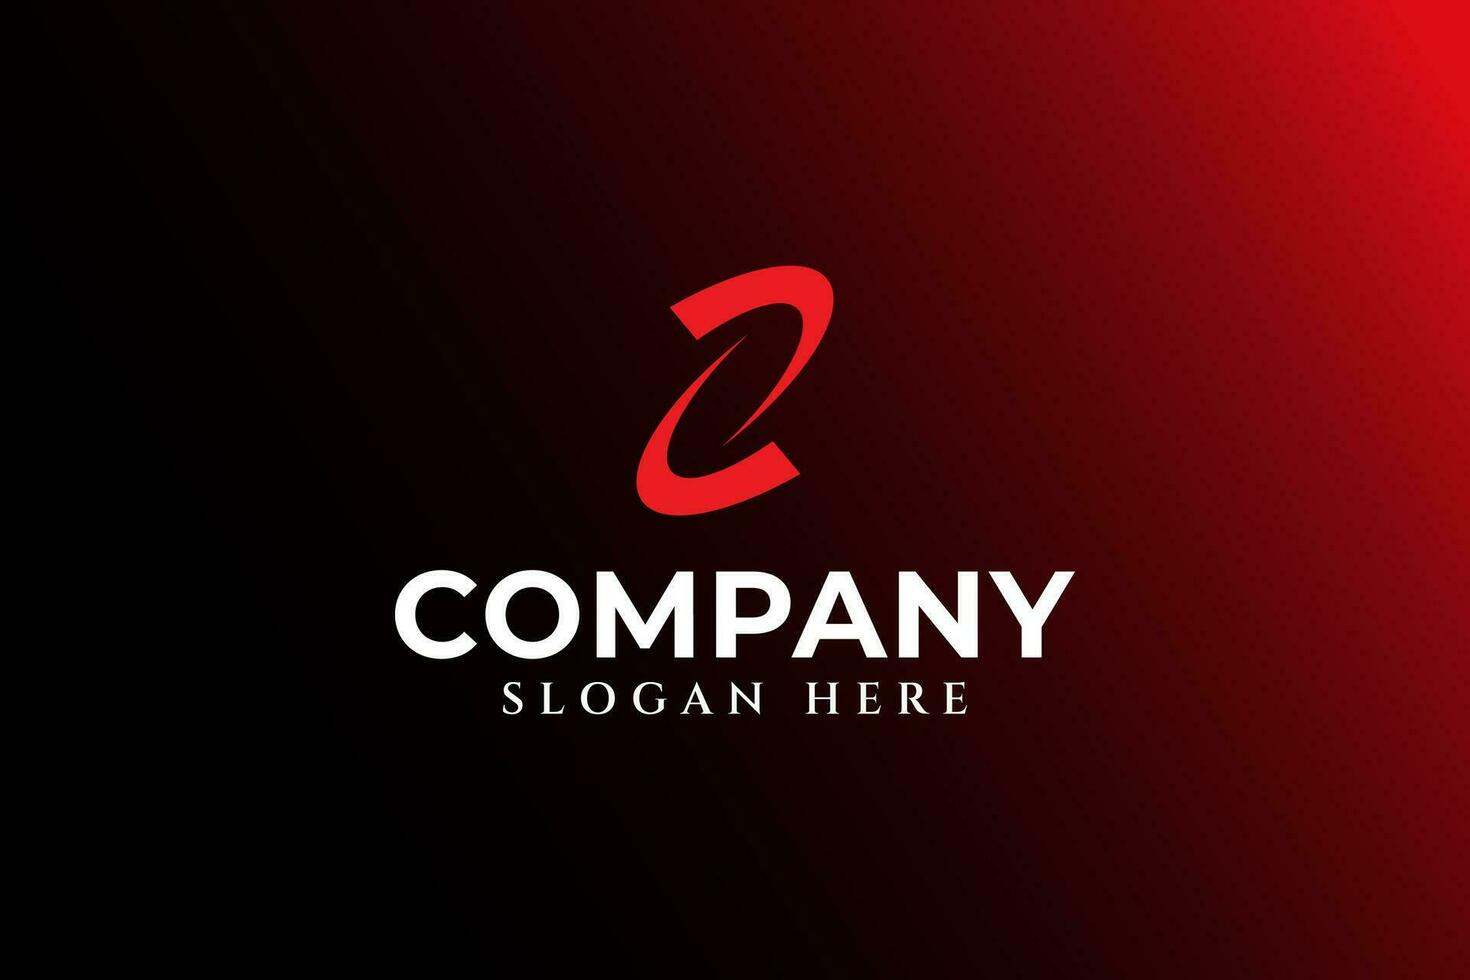 carta z com galáxia conceito logotipo Projeto para profissional o negócio companhia vetor